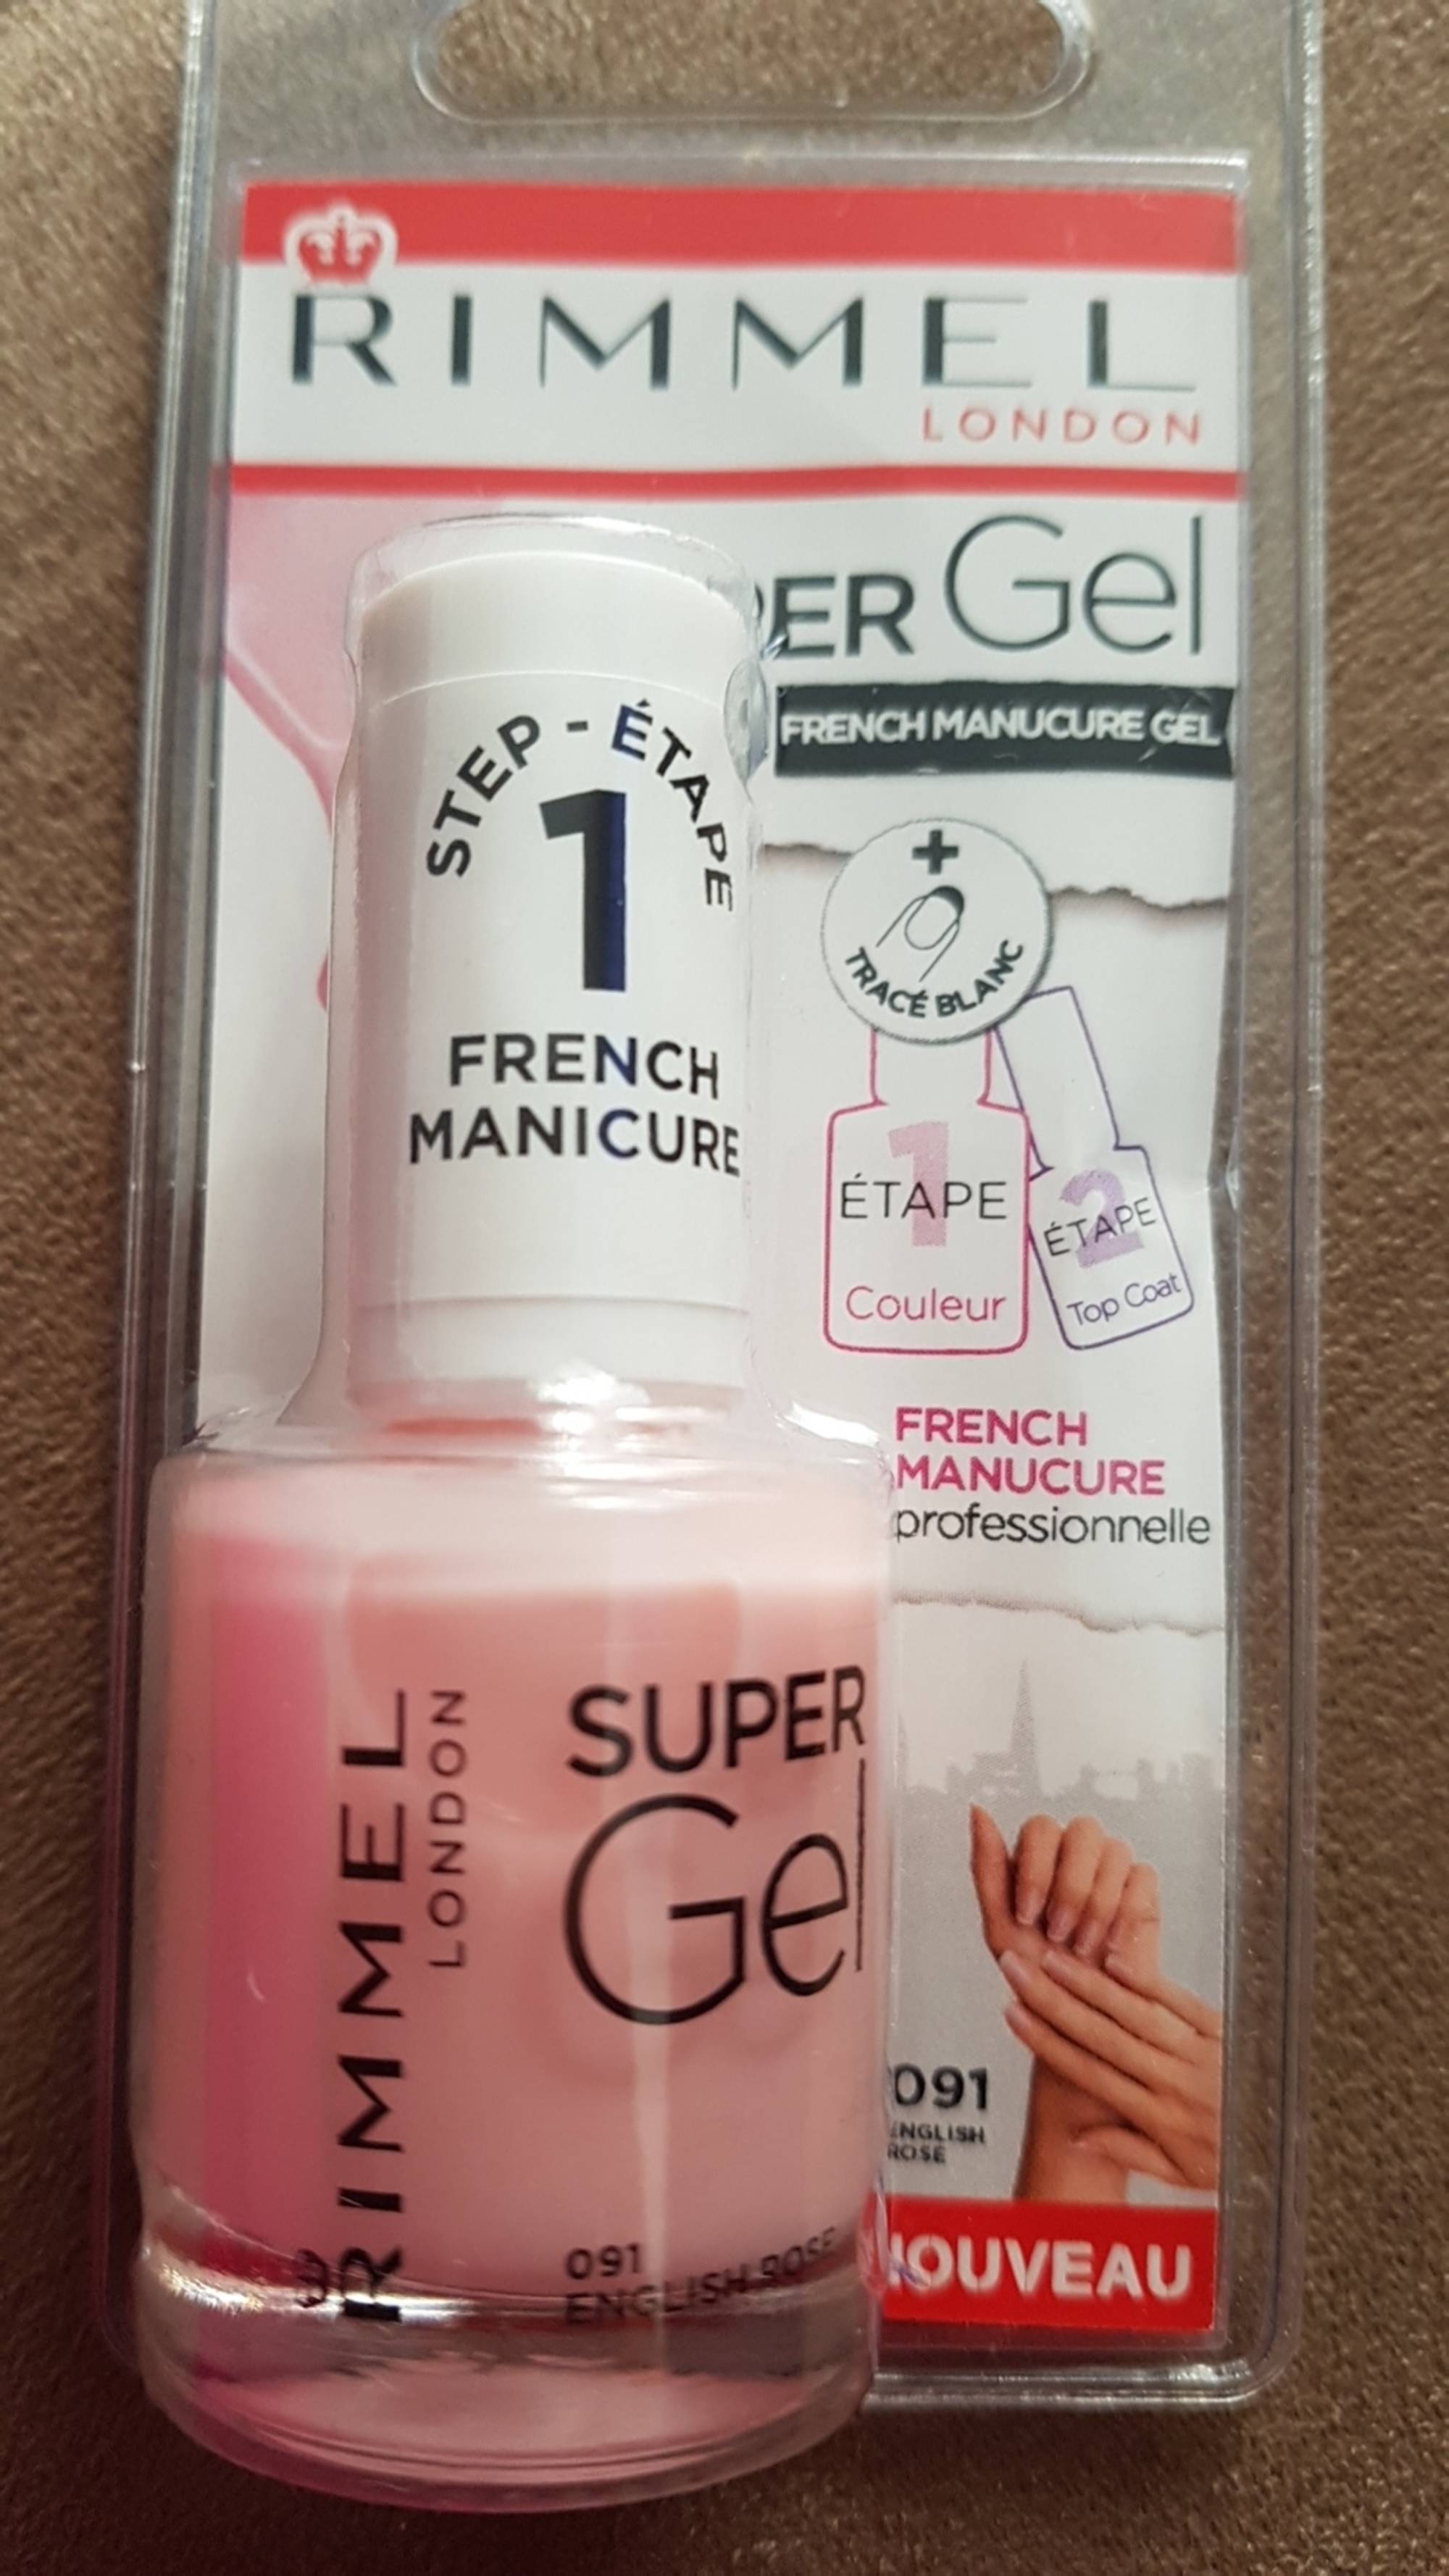 RIMMEL - Super gel - French manucure